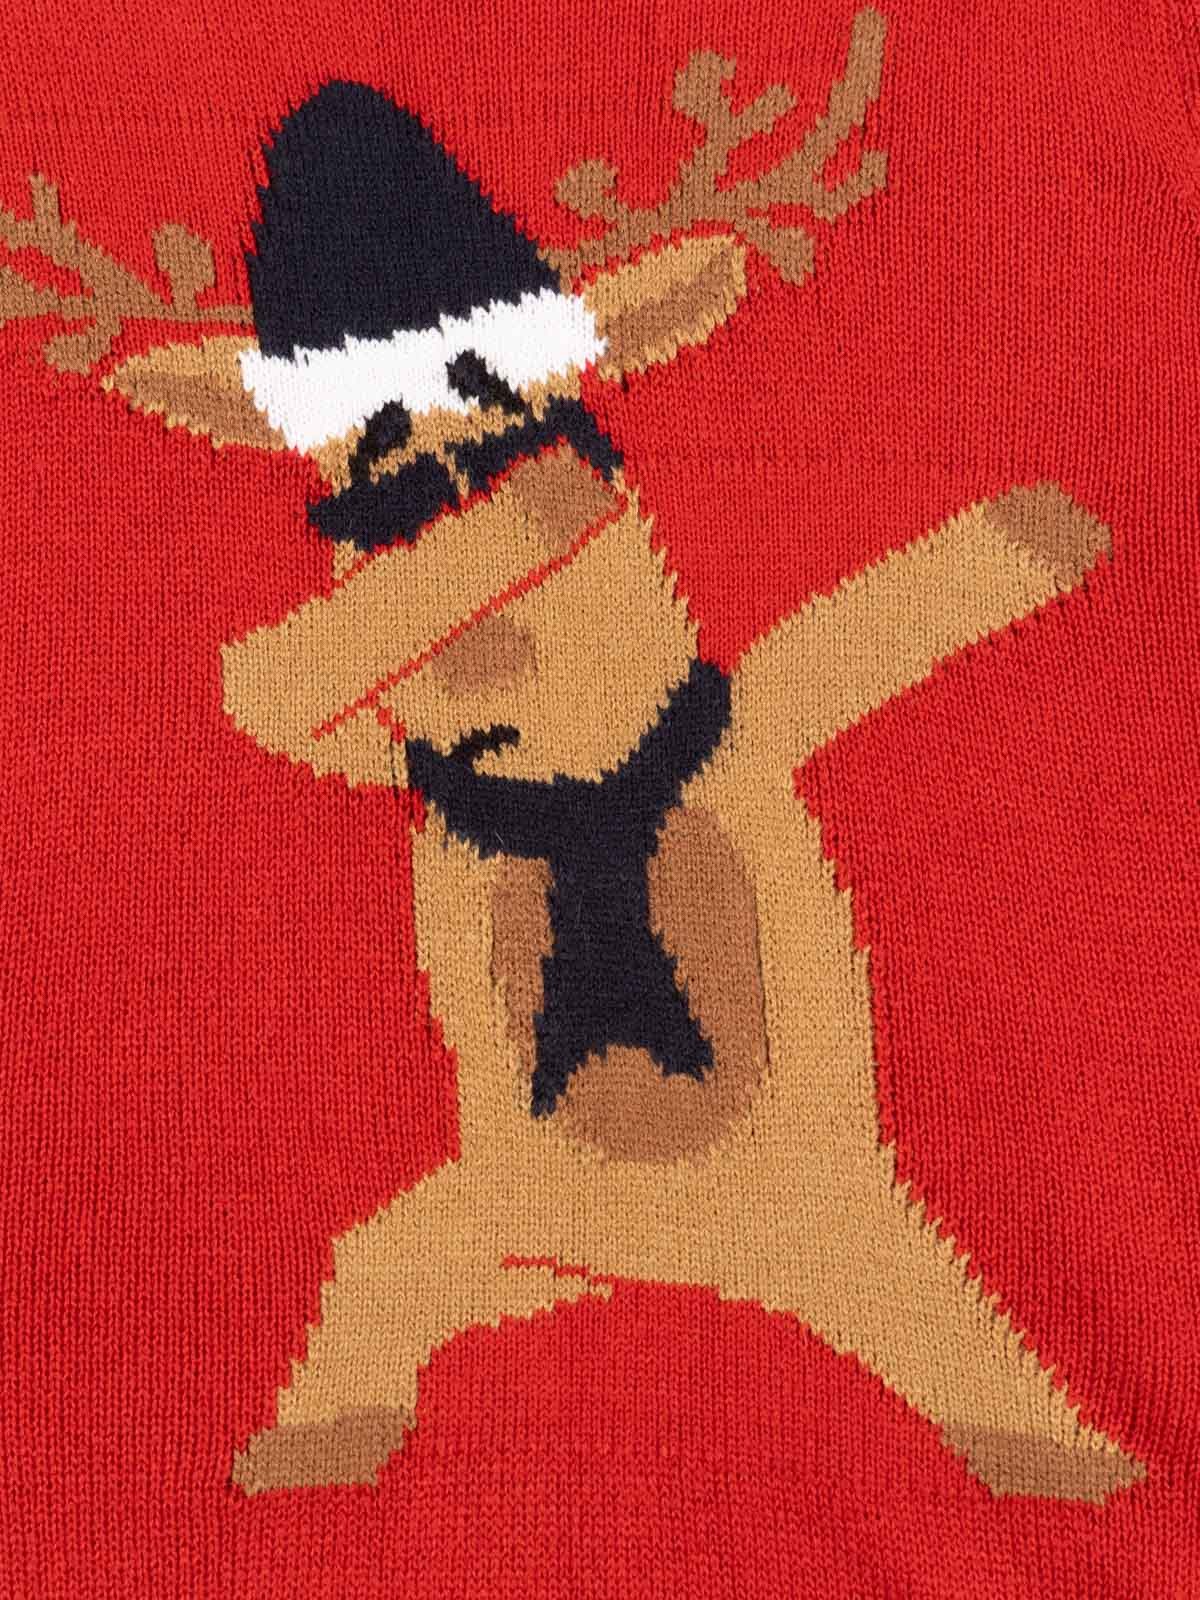 T-shirt de Noël motif renne femme - DistriCenter